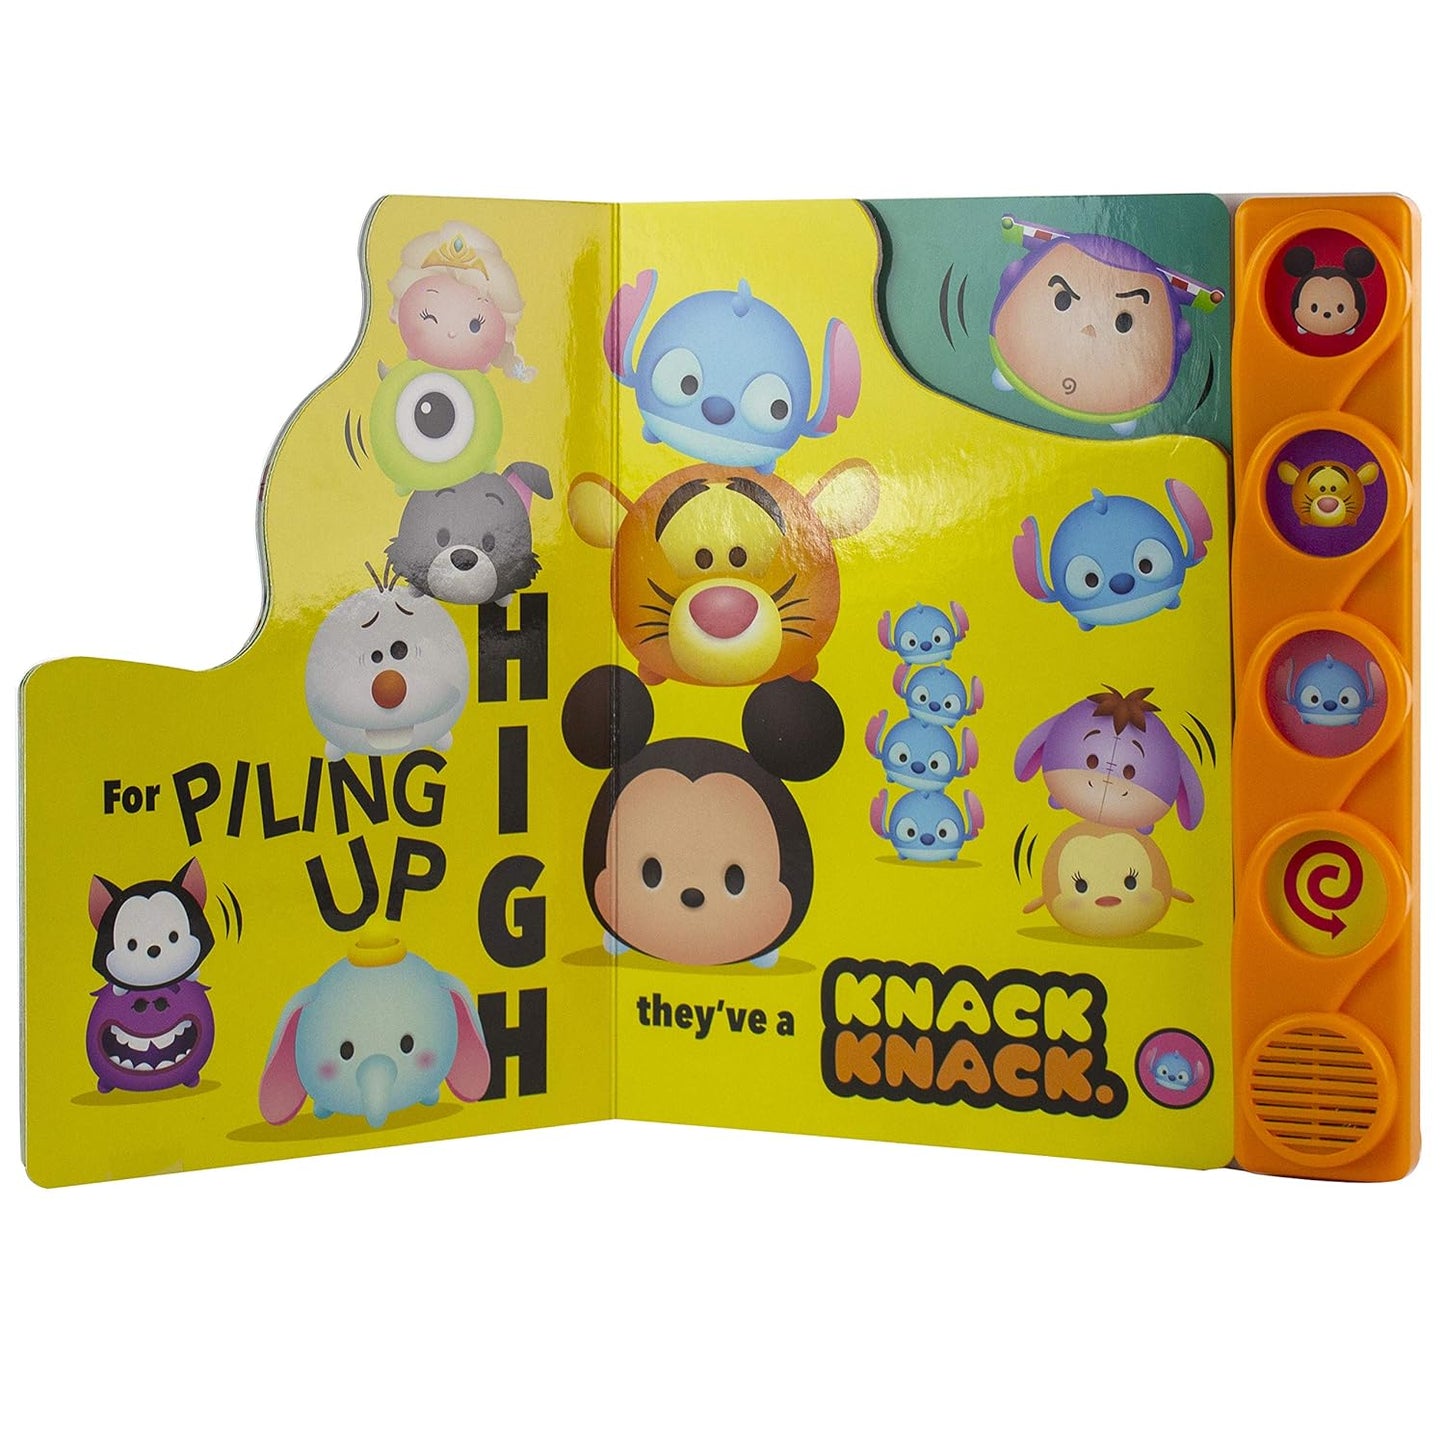 Disney Tsum Tsum Stack Stack Sound Book Children's Interactive Press Play Baby